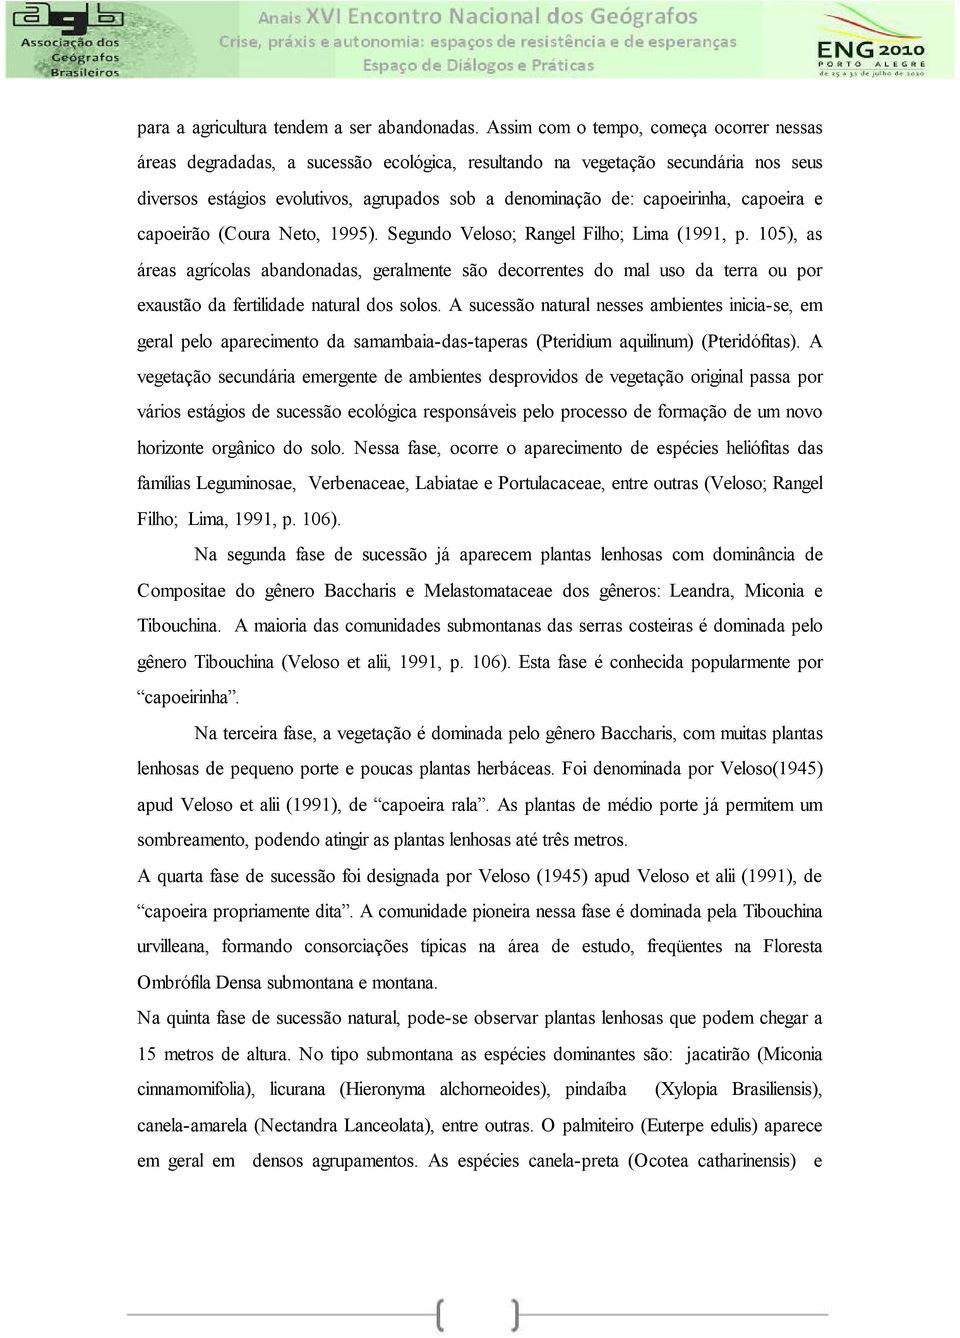 capoeira e capoeirão (Coura Neto, 1995). Segundo Veloso; Rangel Filho; Lima (1991, p.